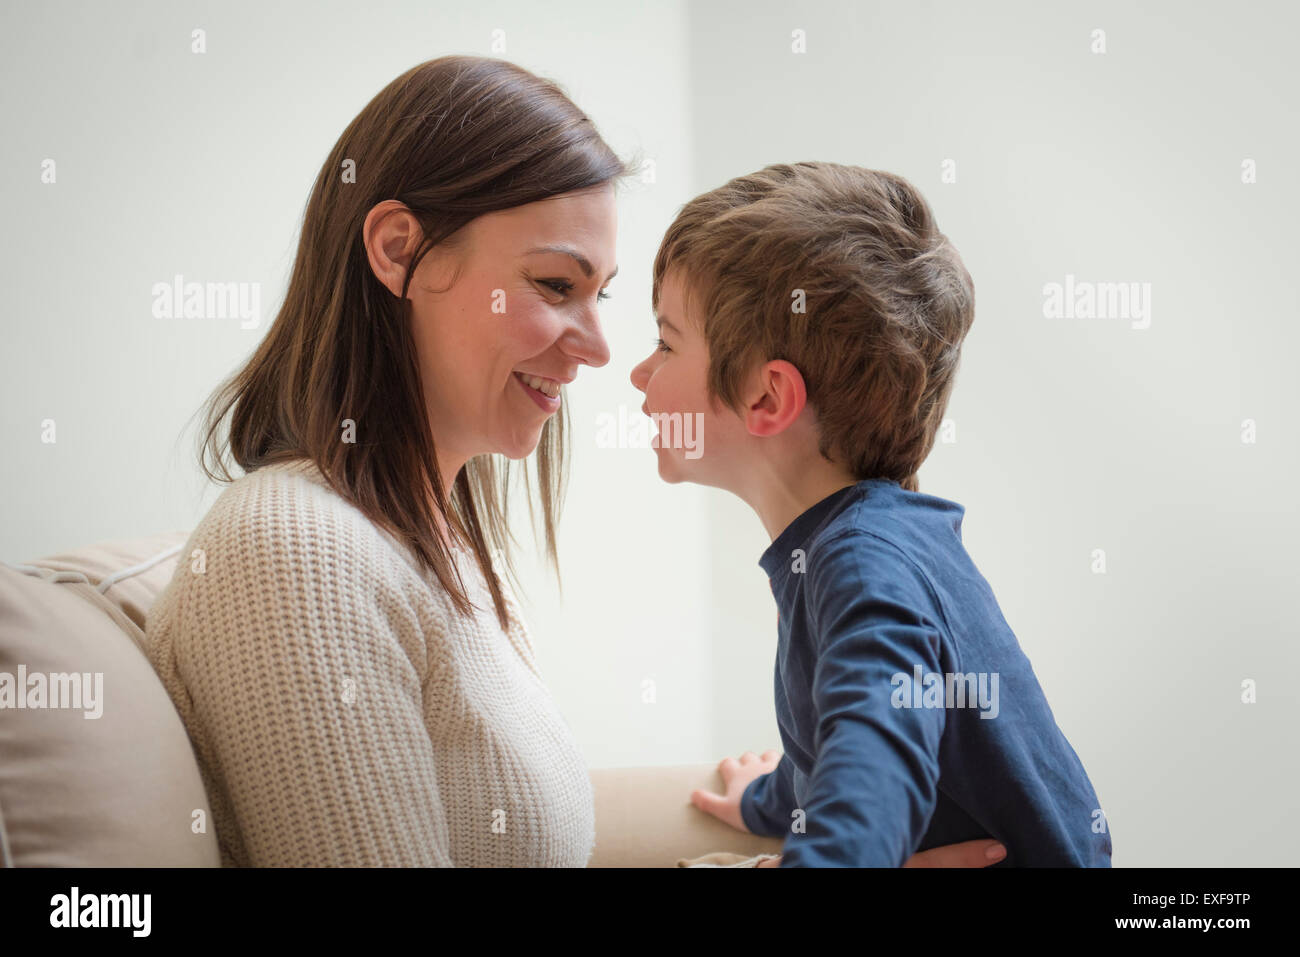 Madre e hijo sonriendo el uno al otro, cara a cara. Foto de stock